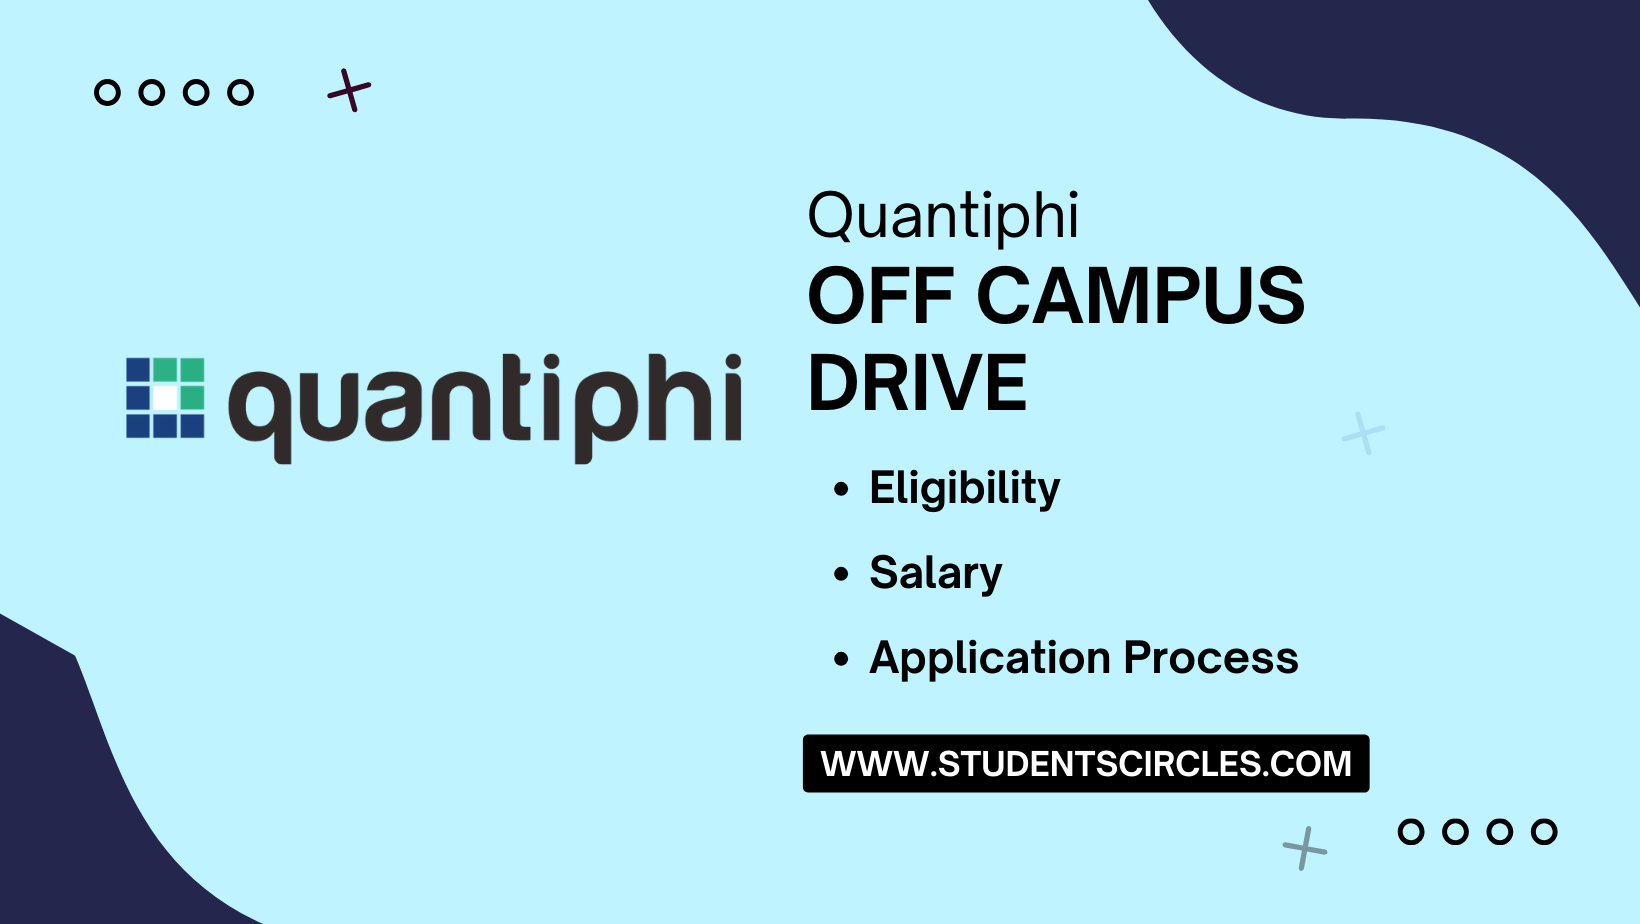 Quantiphi Off Campus Drive